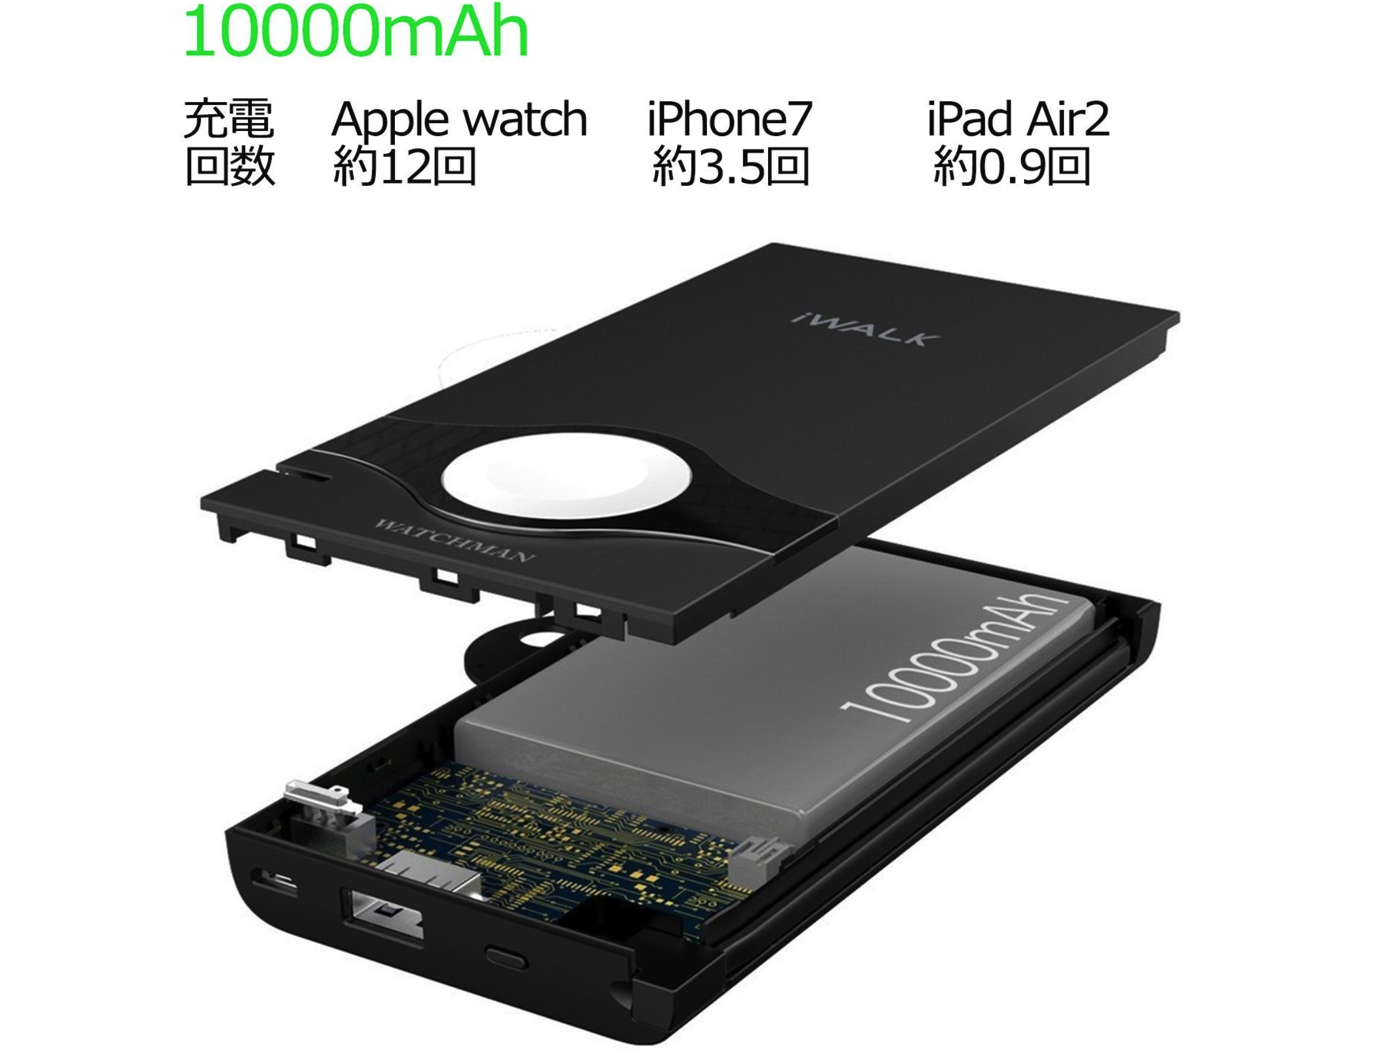 ライトニング(Lightning)ケーブル内蔵 iPhone/Apple Watch同時充電可能な大容量10000mAhのモバイルバッテリー-6